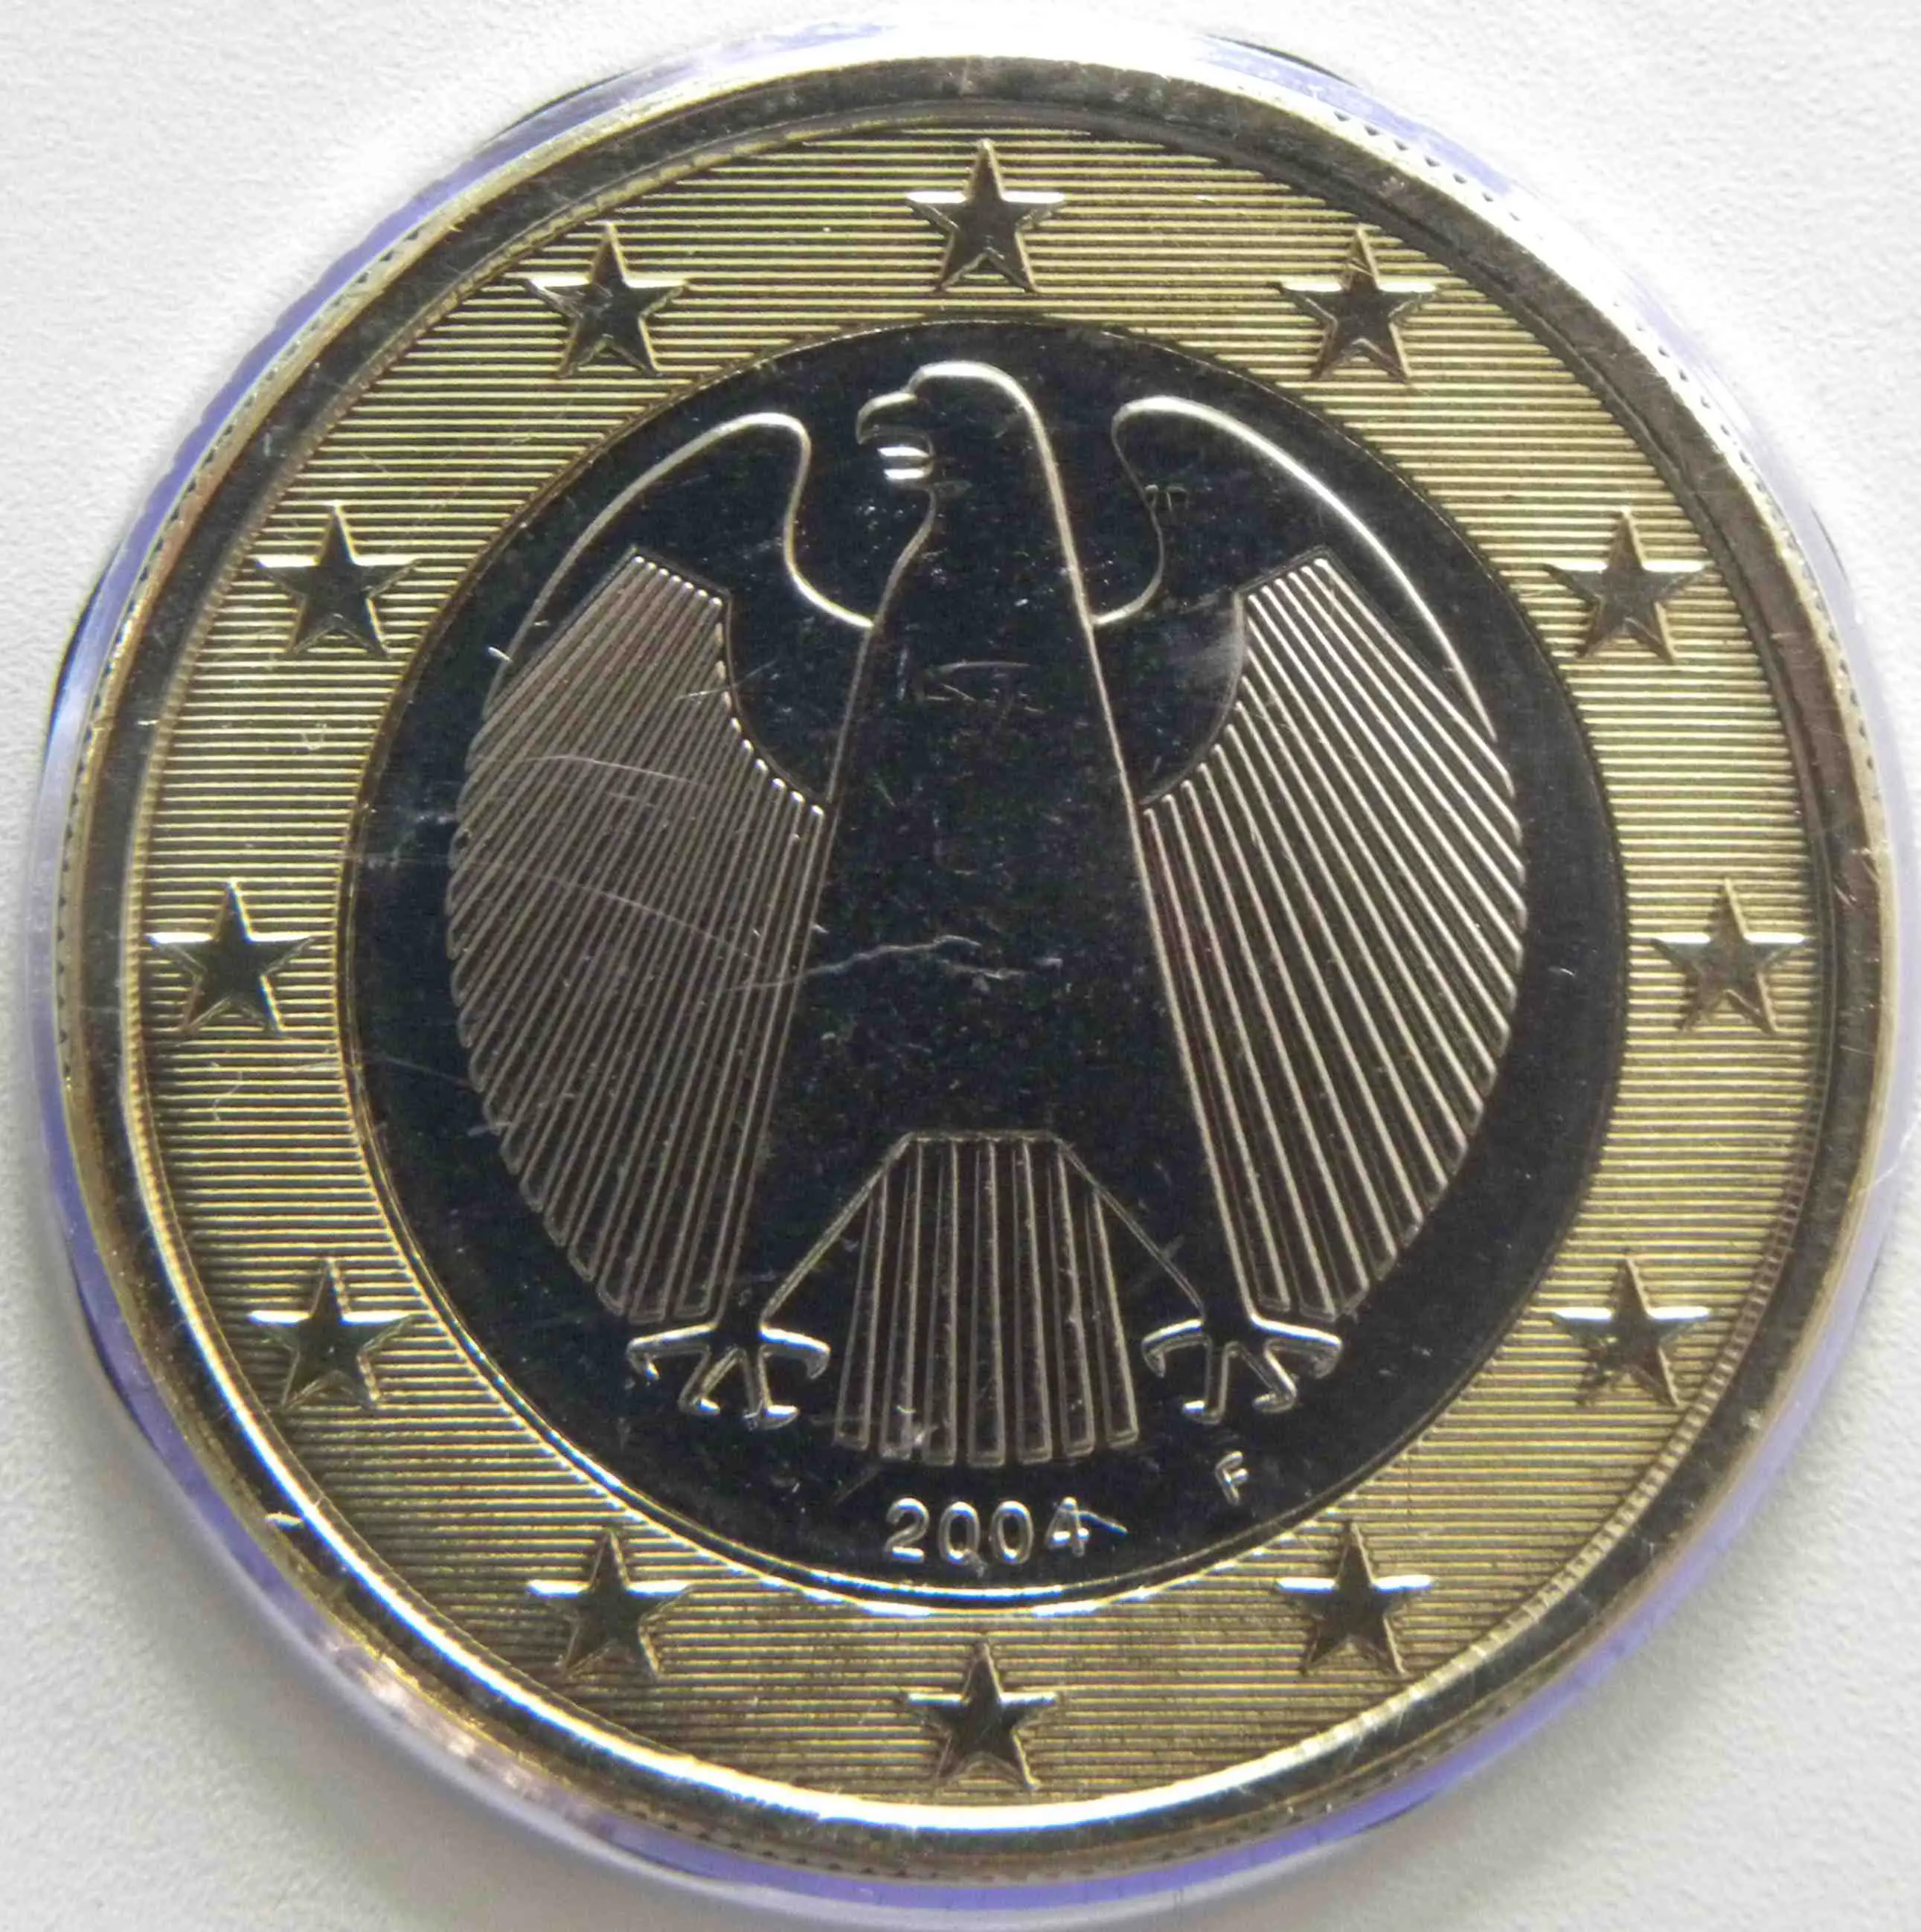 Deutschland 1 Euro Münze 2004 F - euro-muenzen.tv - Der ...